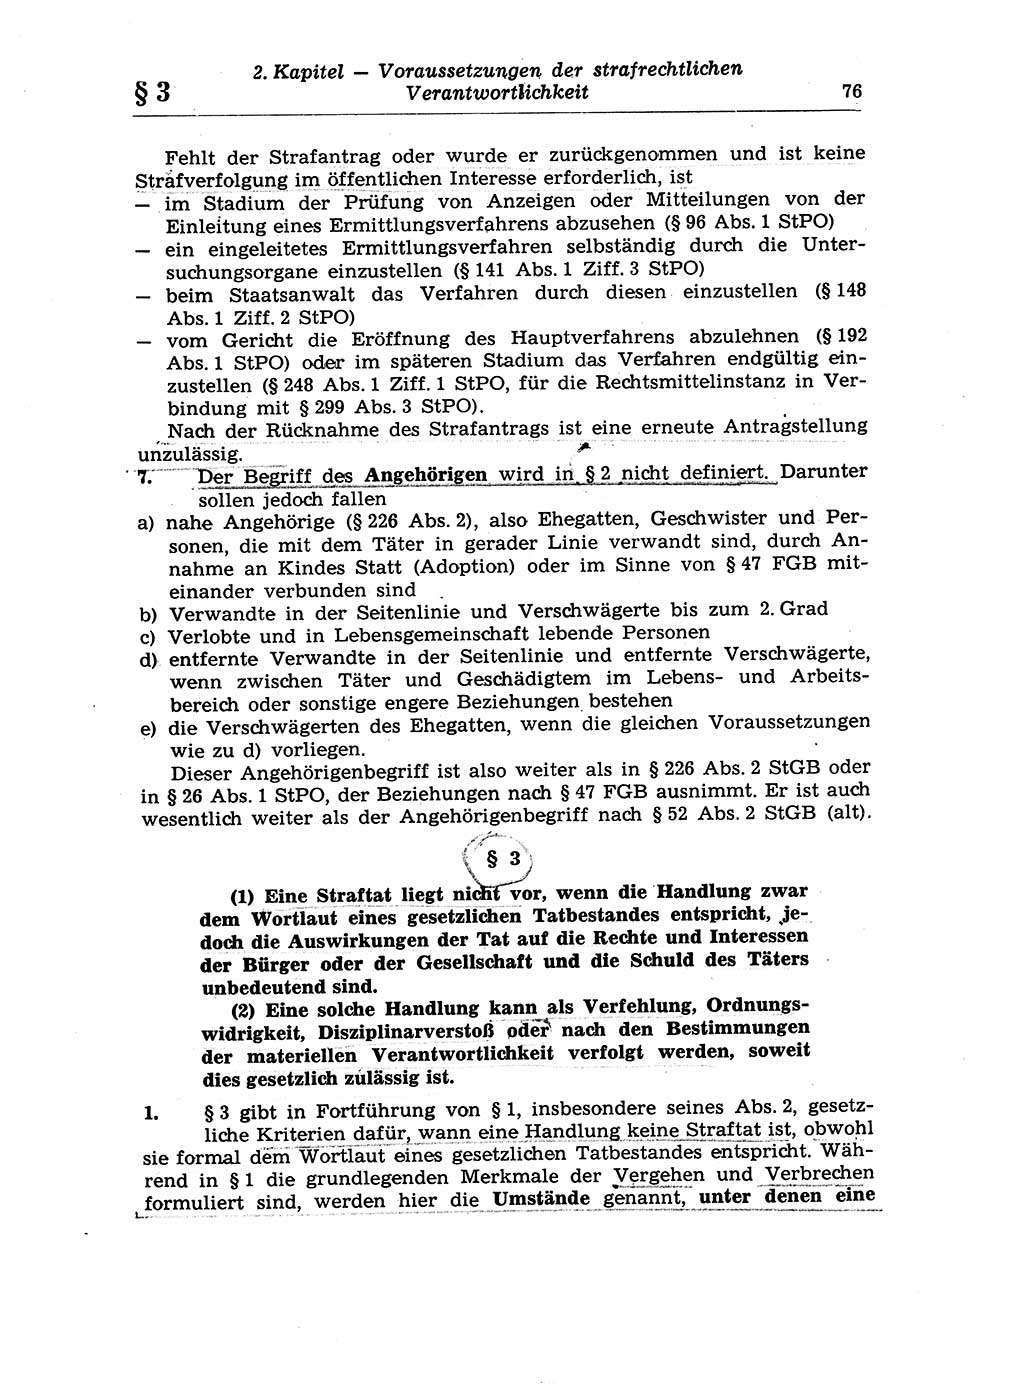 Strafrecht der Deutschen Demokratischen Republik (DDR), Lehrkommentar zum Strafgesetzbuch (StGB), Allgemeiner Teil 1970, Seite 76 (Strafr. DDR Lehrkomm. StGB AT 1970, S. 76)